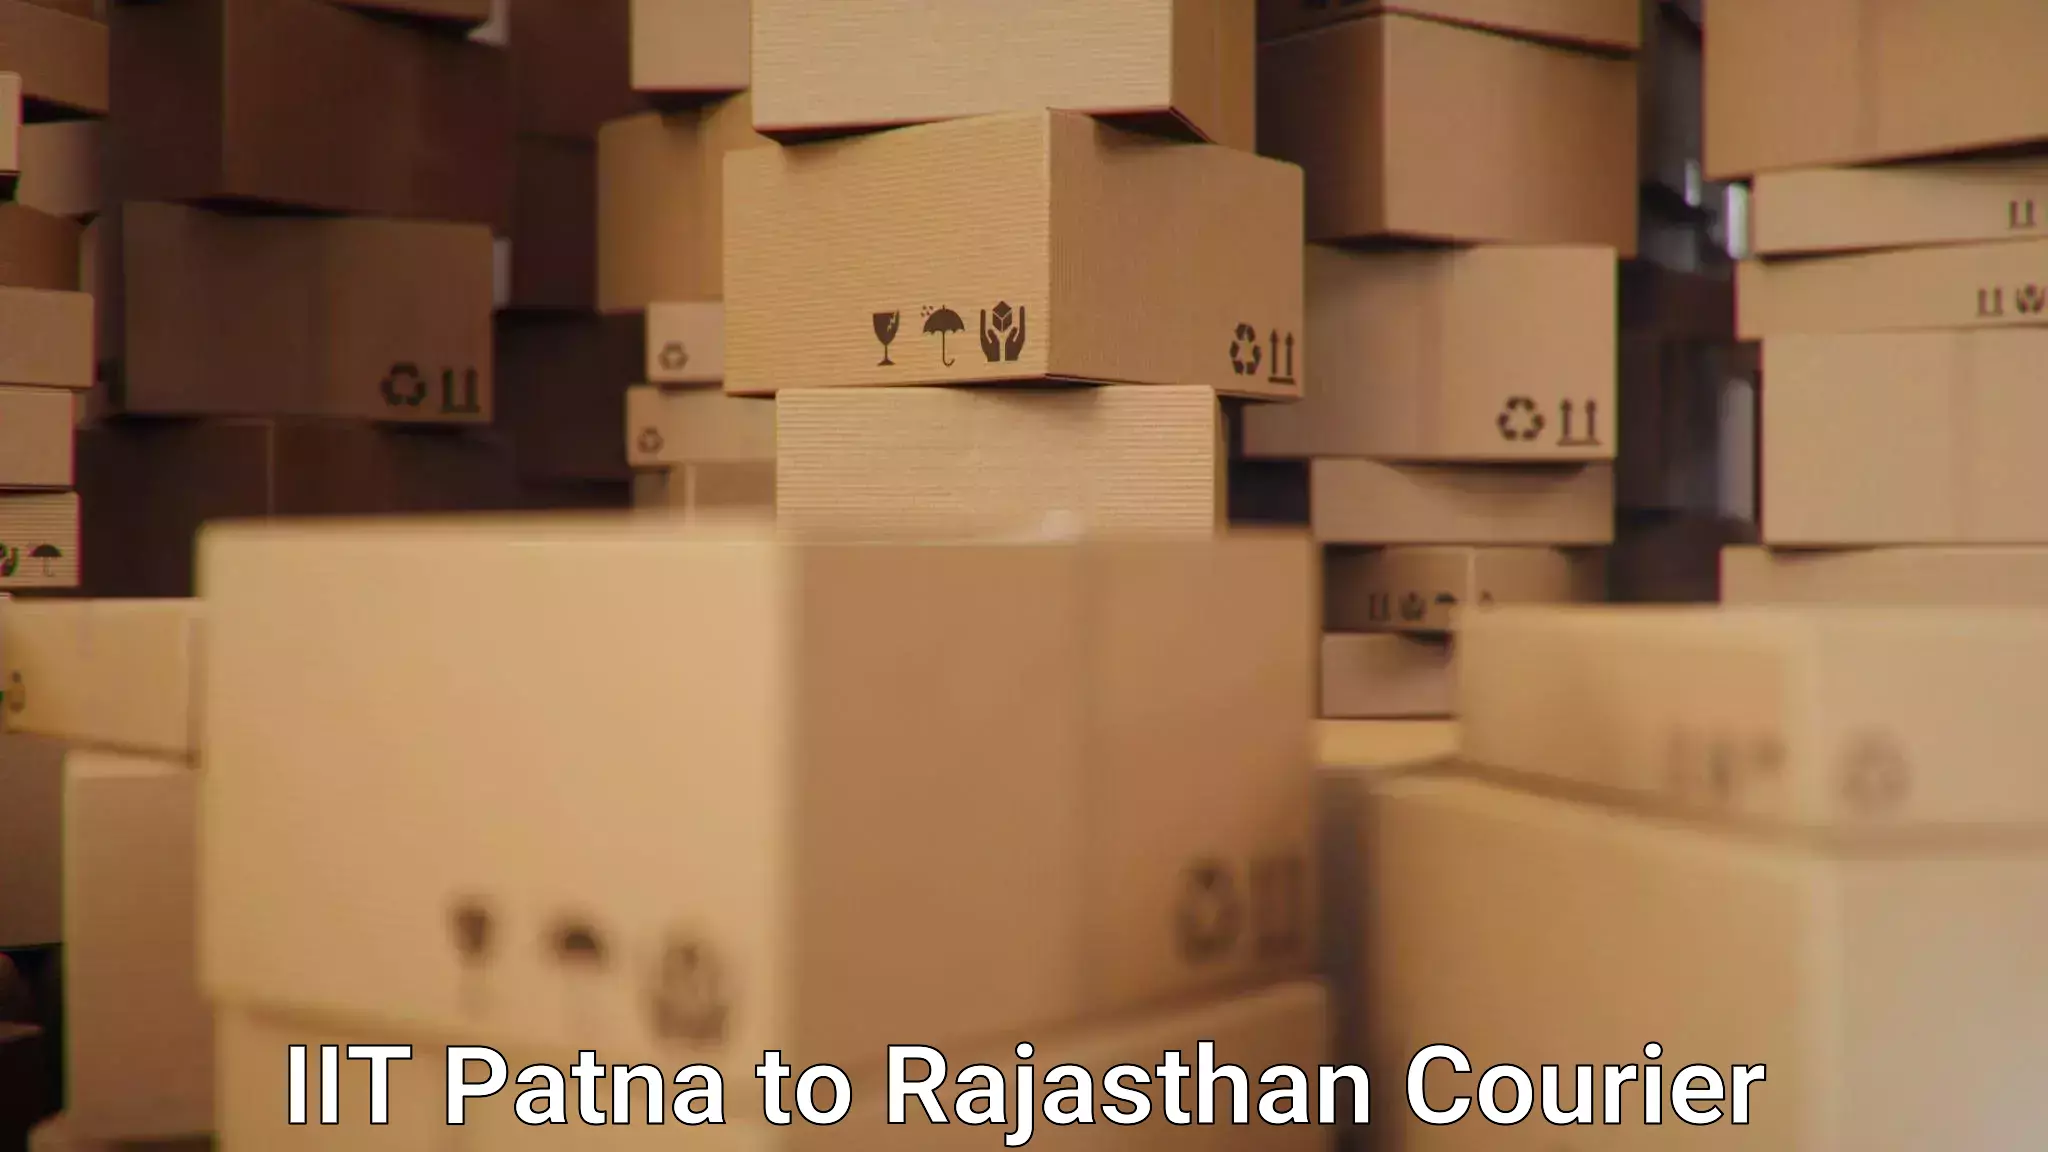 Easy access courier services IIT Patna to Raisingh Nagar